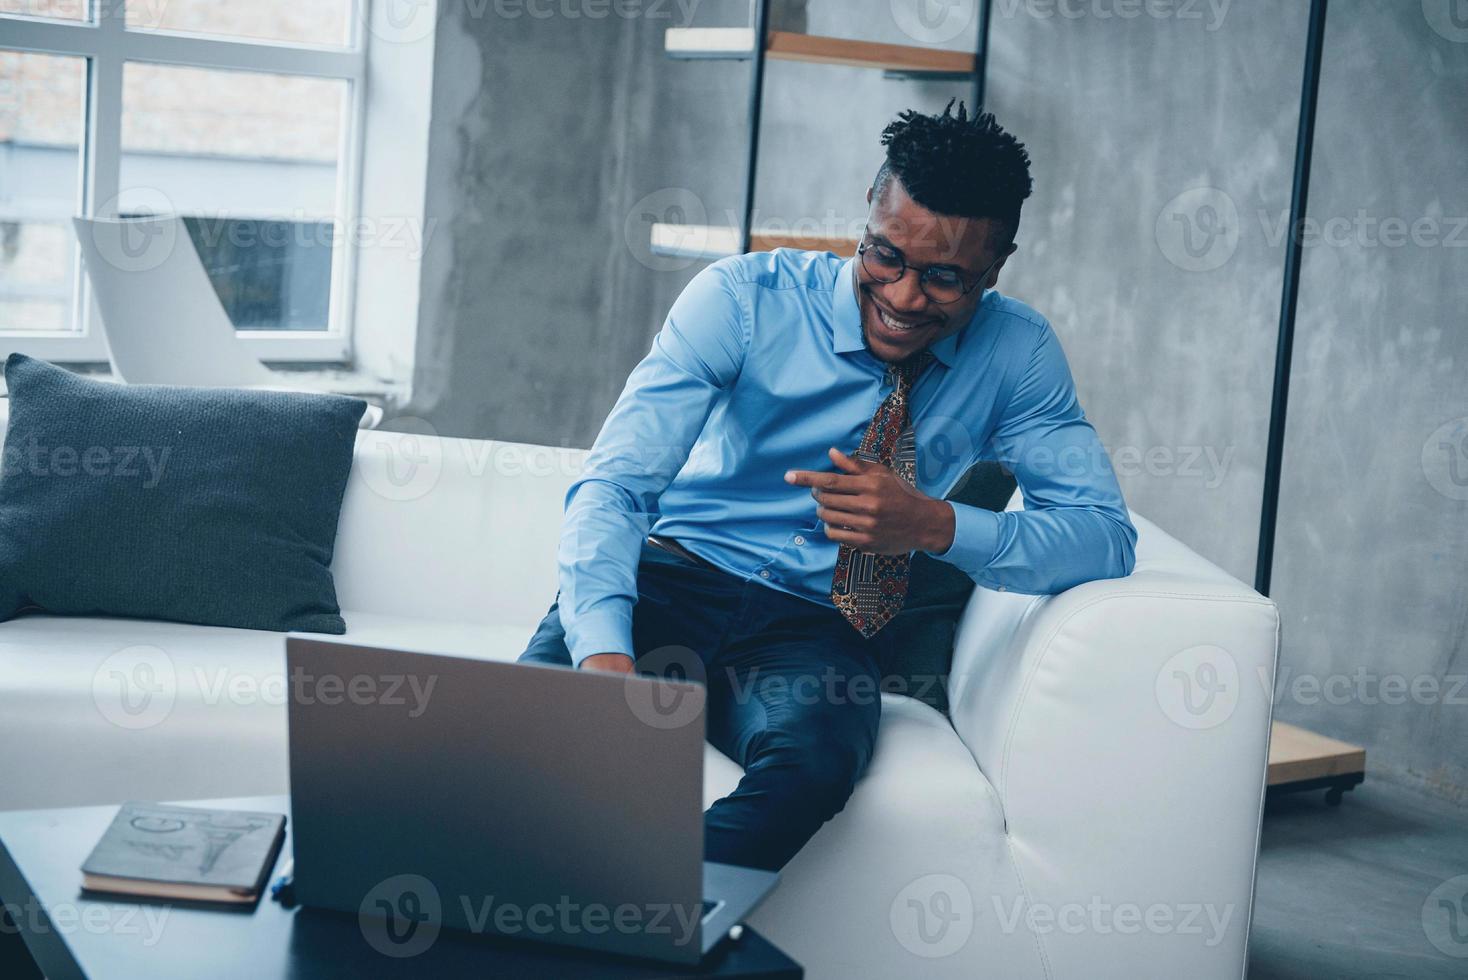 se sentir bien. photo d'un jeune afro-américain à lunettes et vêtements classiques assis devant un ordinateur portable